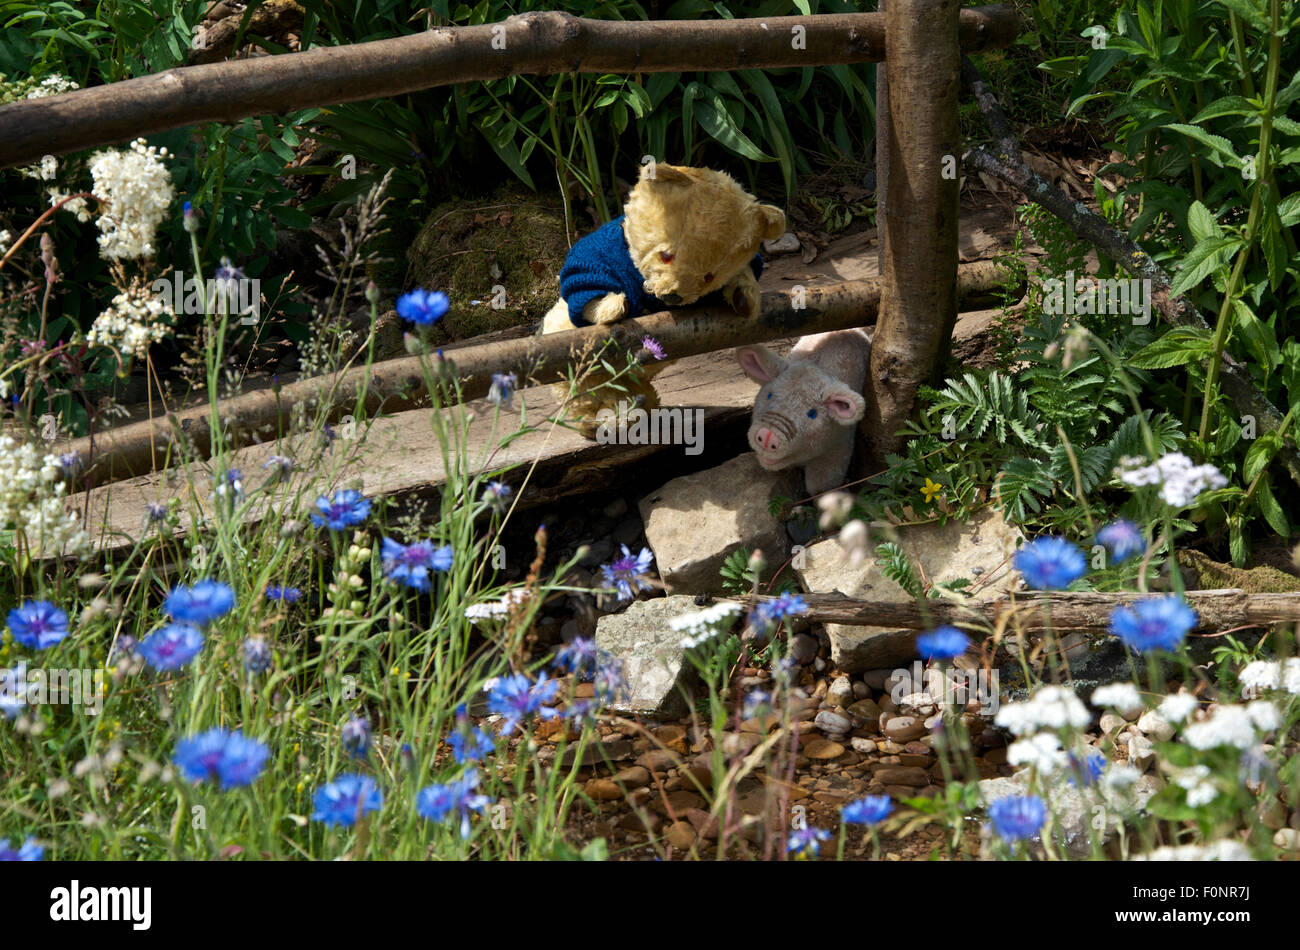 " Winnie the Pooh - inizia il suo cammino", un giardino sponsorizzato da Botanica Mondo scoperte, ad RHS Hampton Court Palace Flower Show. Foto Stock